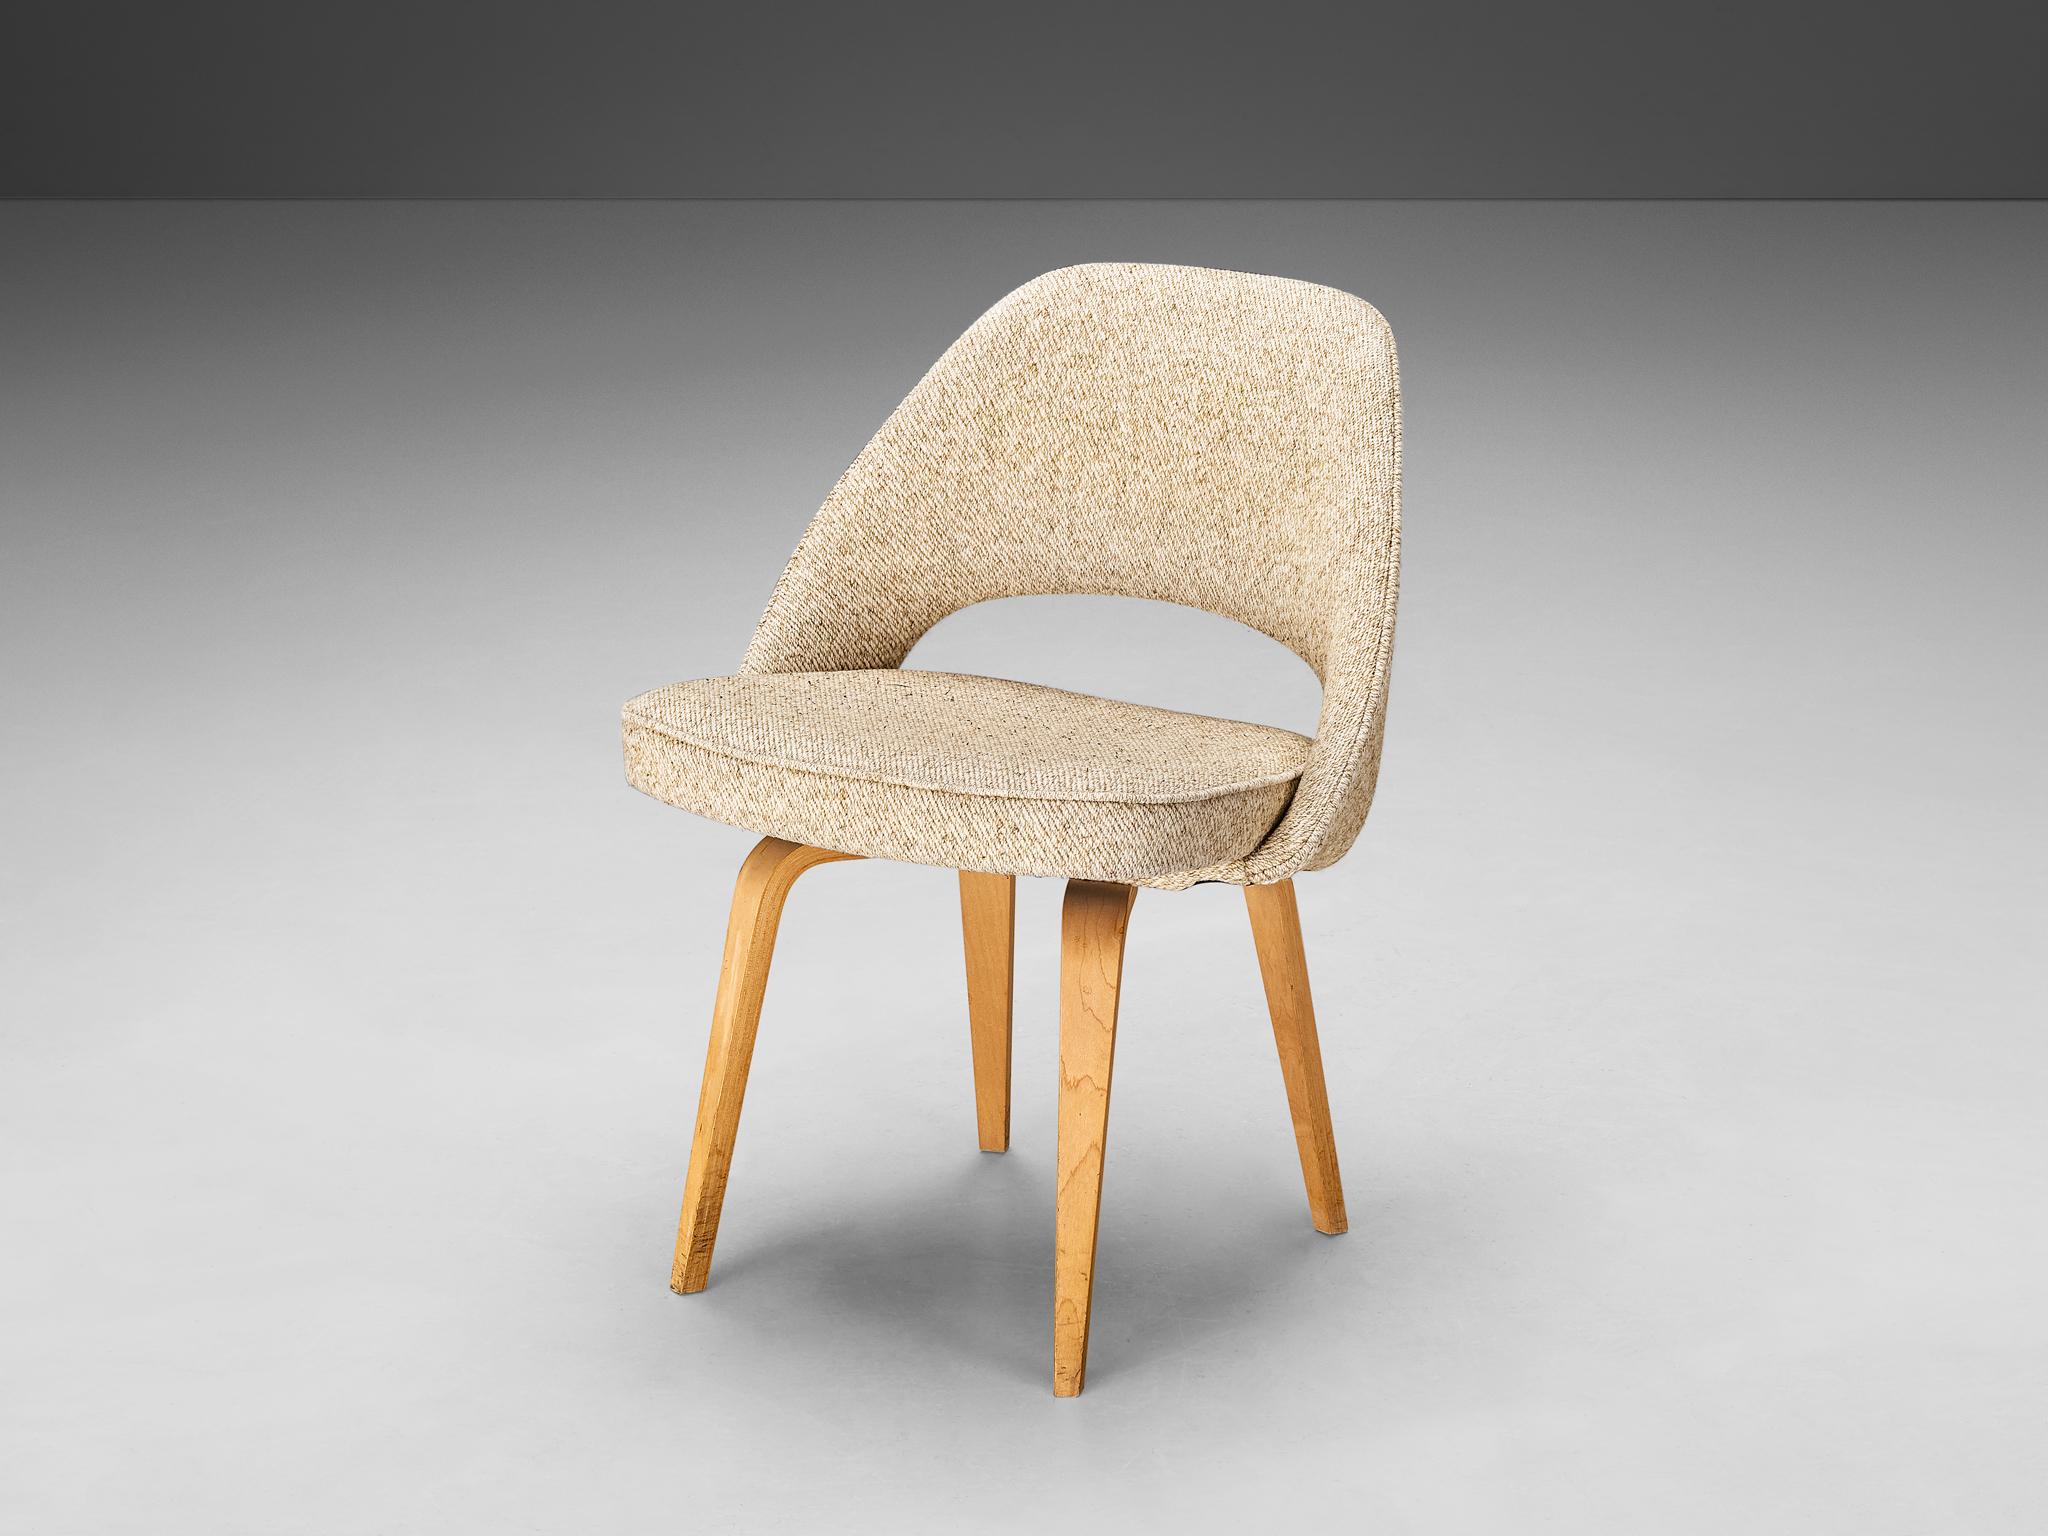 Eero Saarinen pour Knoll International, chaise de salle à manger, chêne, tissu, États-Unis, design 1948, production ultérieure

Une chaise de forme organique conçue par Eero Saarinen. Une forme fluide et sculpturale. Ce design intemporel et